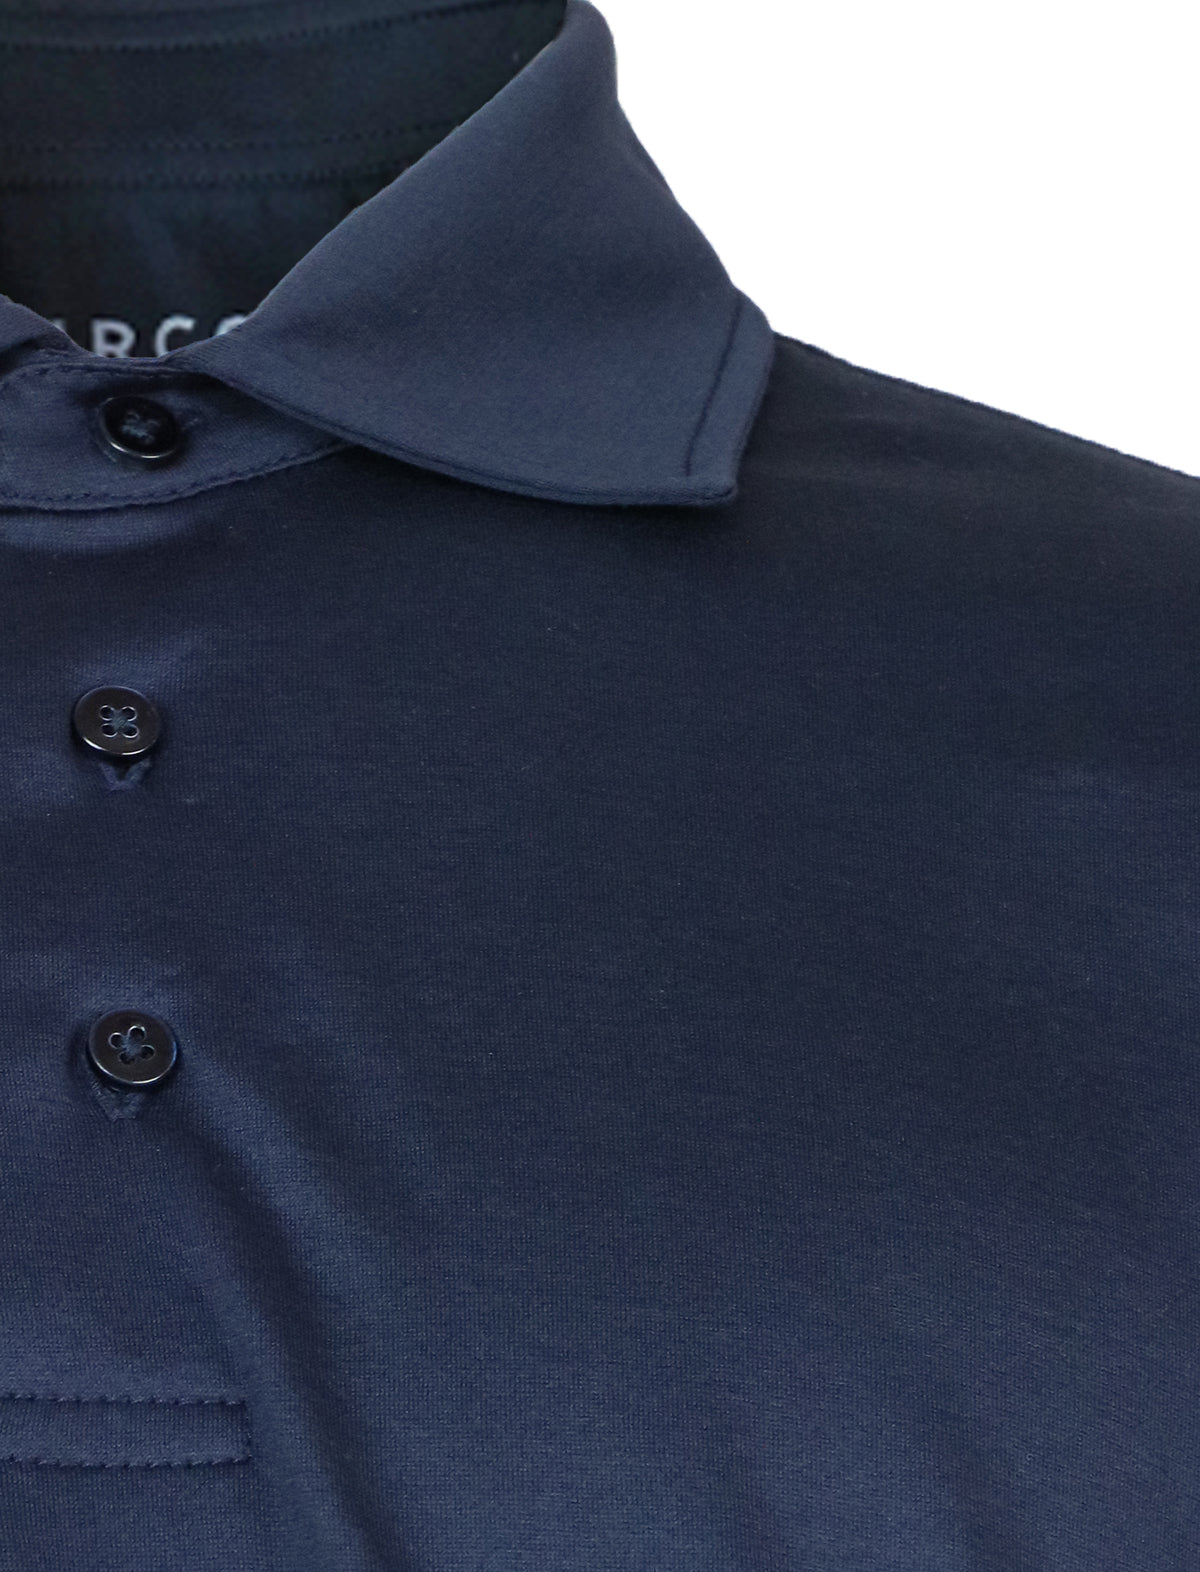 CIRCOLO 1901 Jersey Polo Shirt in Blue